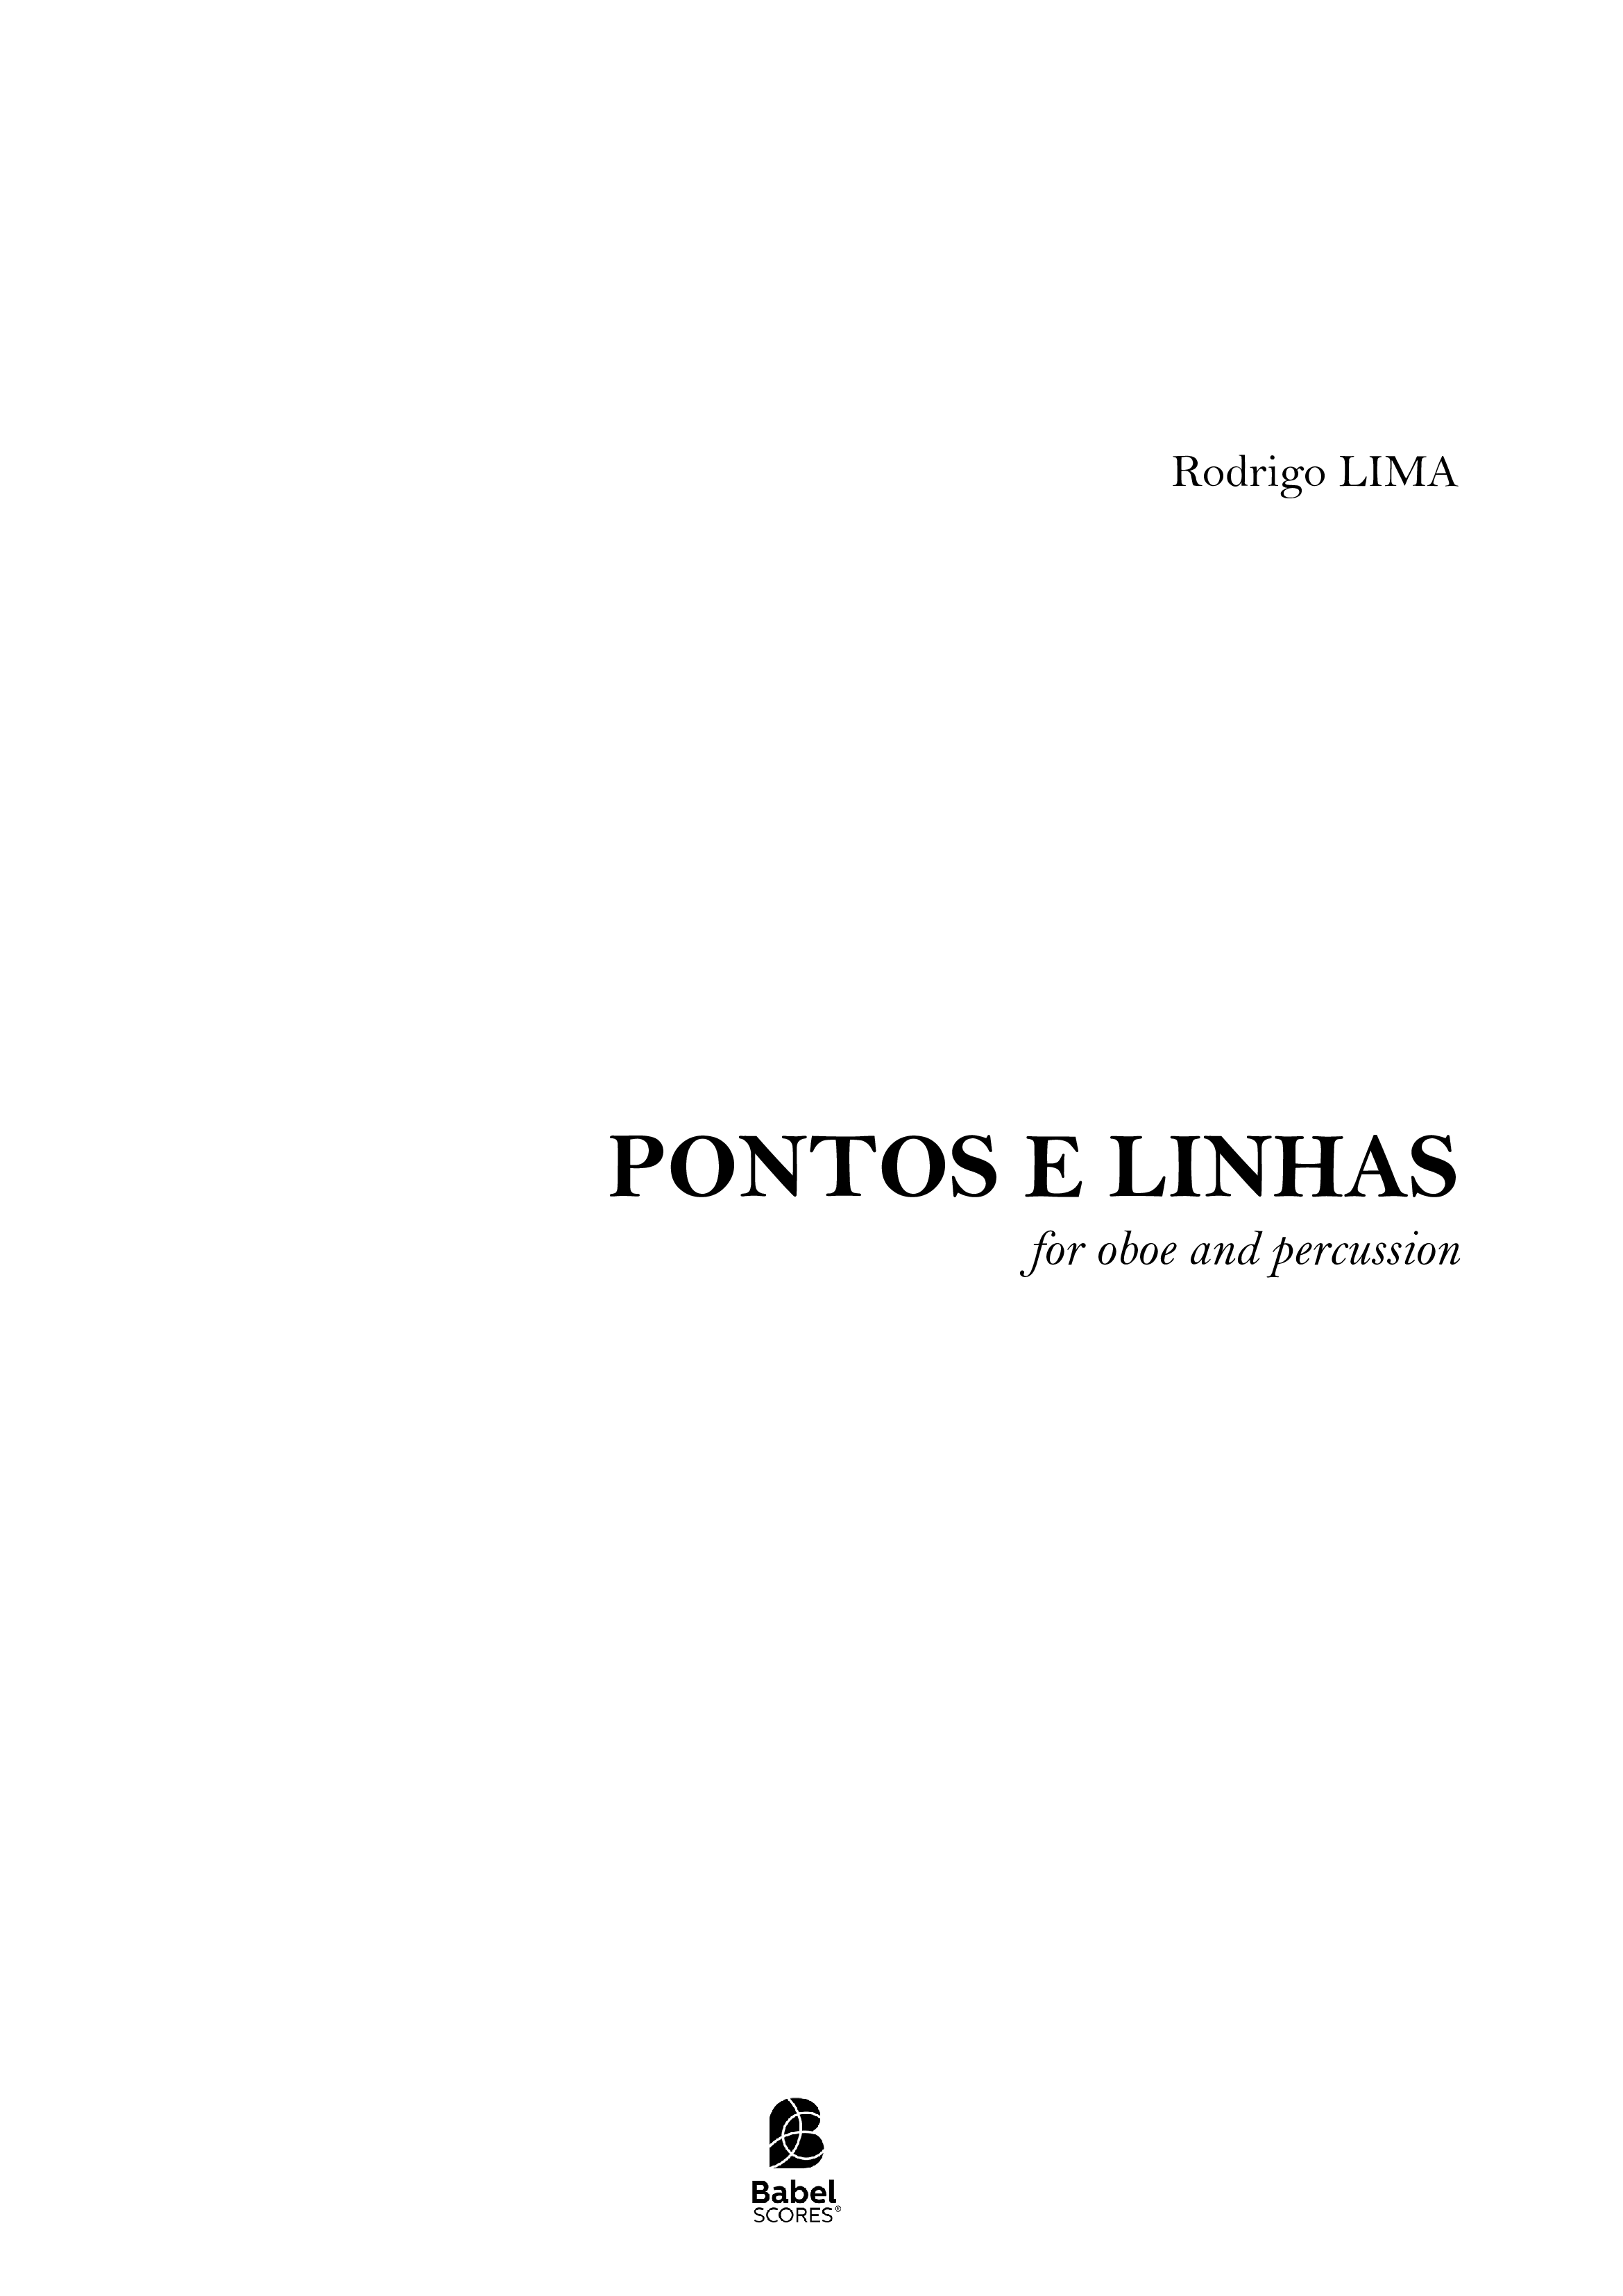 PONTOS E LINHAS_for oboe and percussion_RodrigoLIMA z